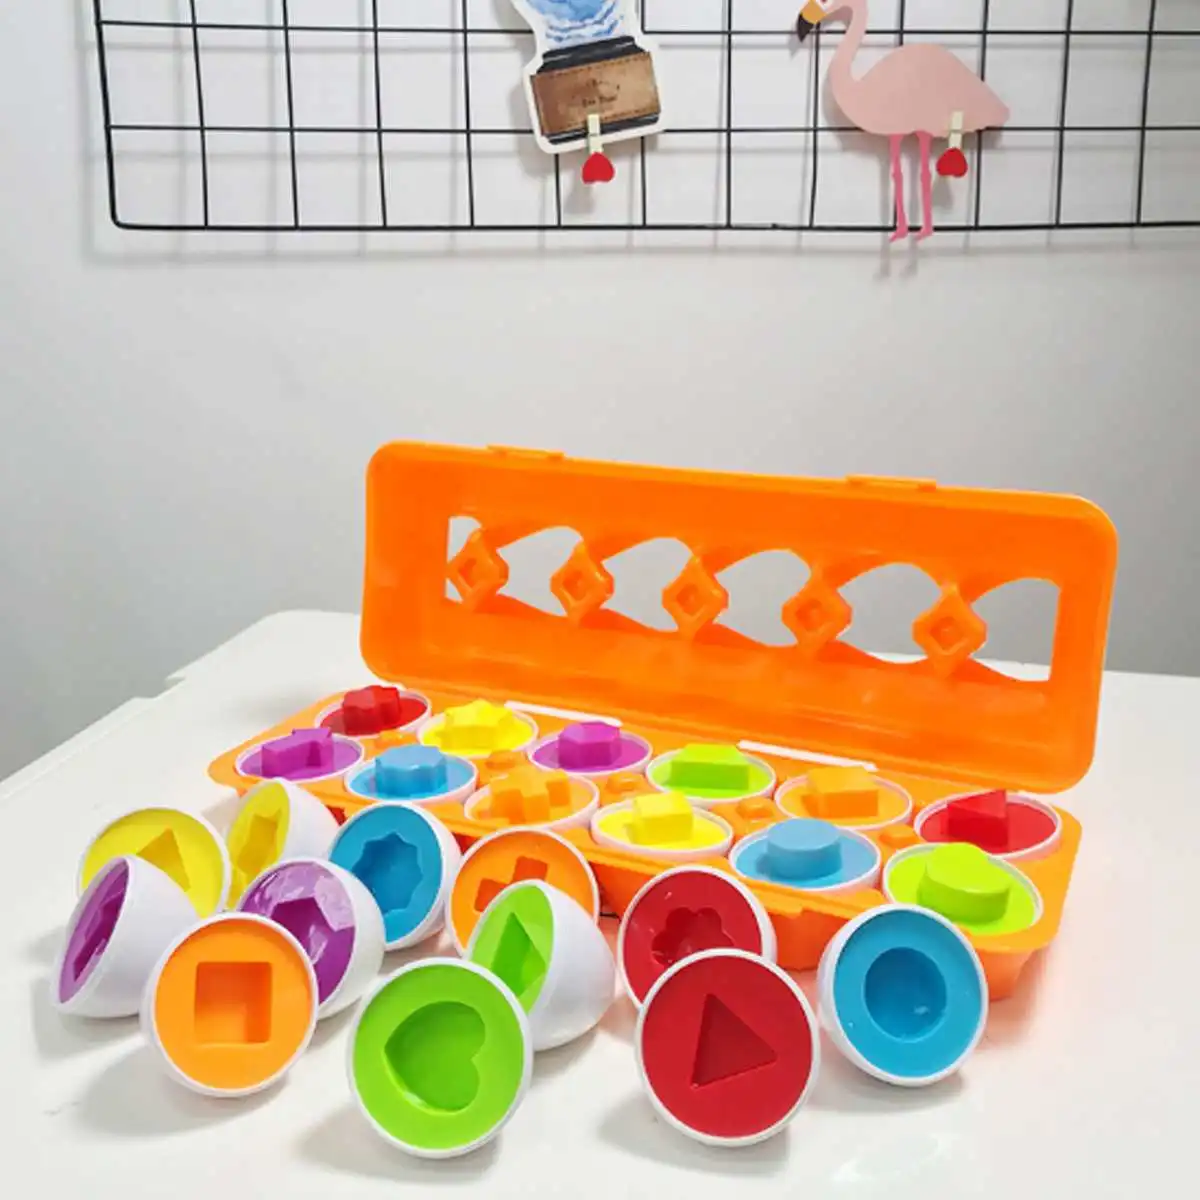 Обучение по методу Монтессори математические игрушки умные яйца 3D игра-головоломка для детей математические игрушки смешанные формы яйца цвет формы Соответствующие Яйца